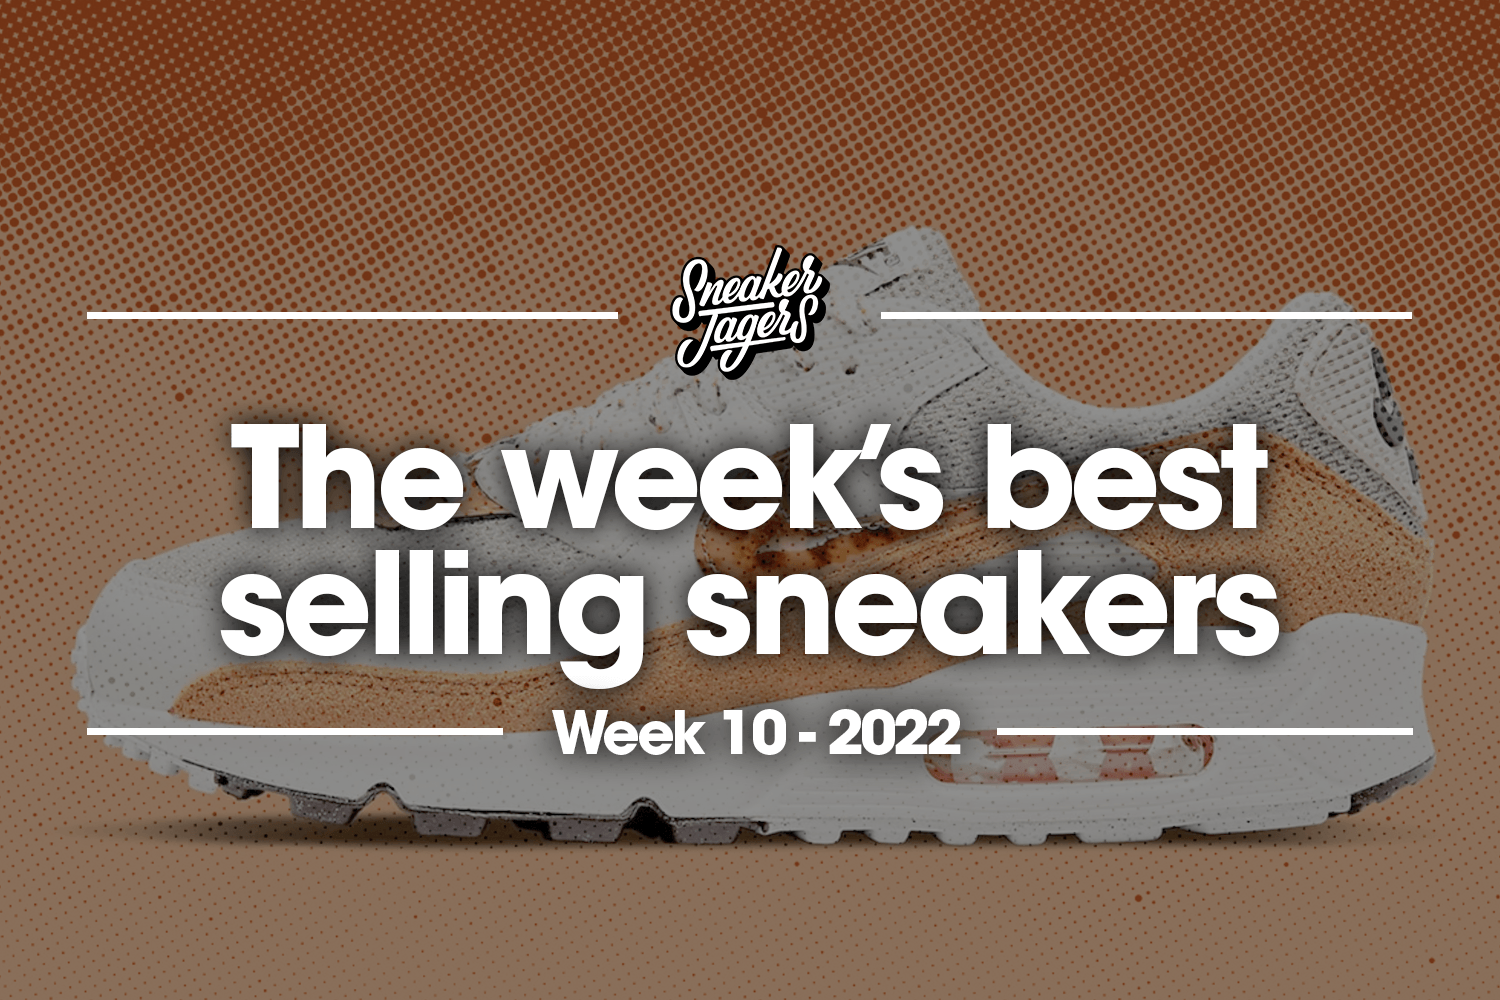 The 5 best-selling sneakers of week 10